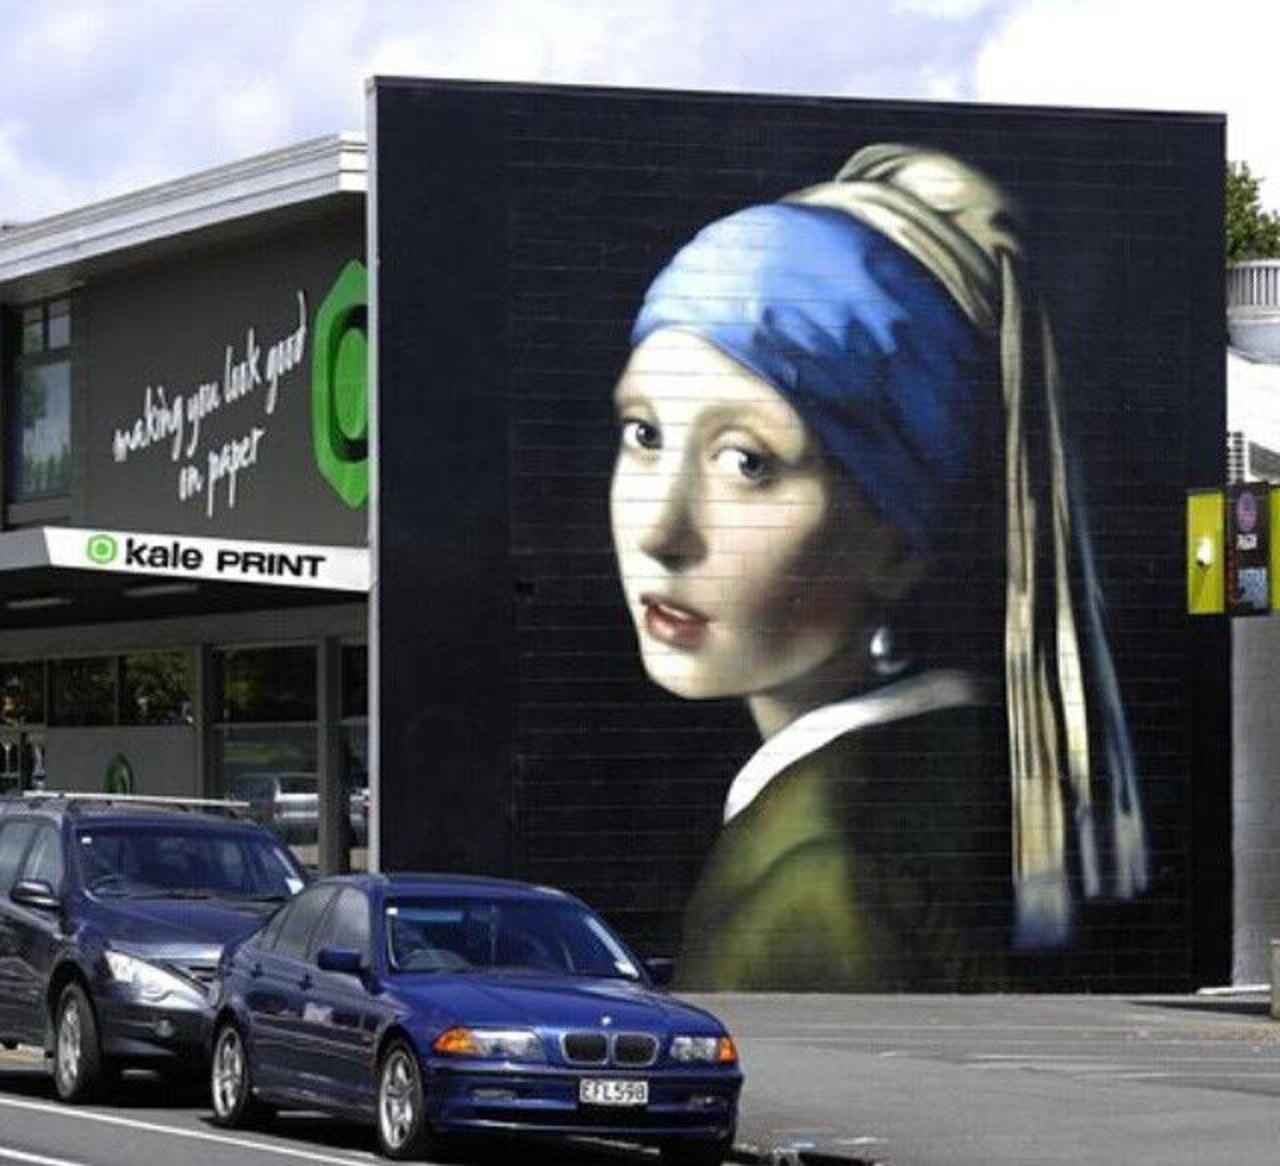 The Girl with the Pearl Earring Street Art by Owen Dippie in New Zealand 

#art #arte #graffiti #streetart http://t.co/ctOuPyZ12m